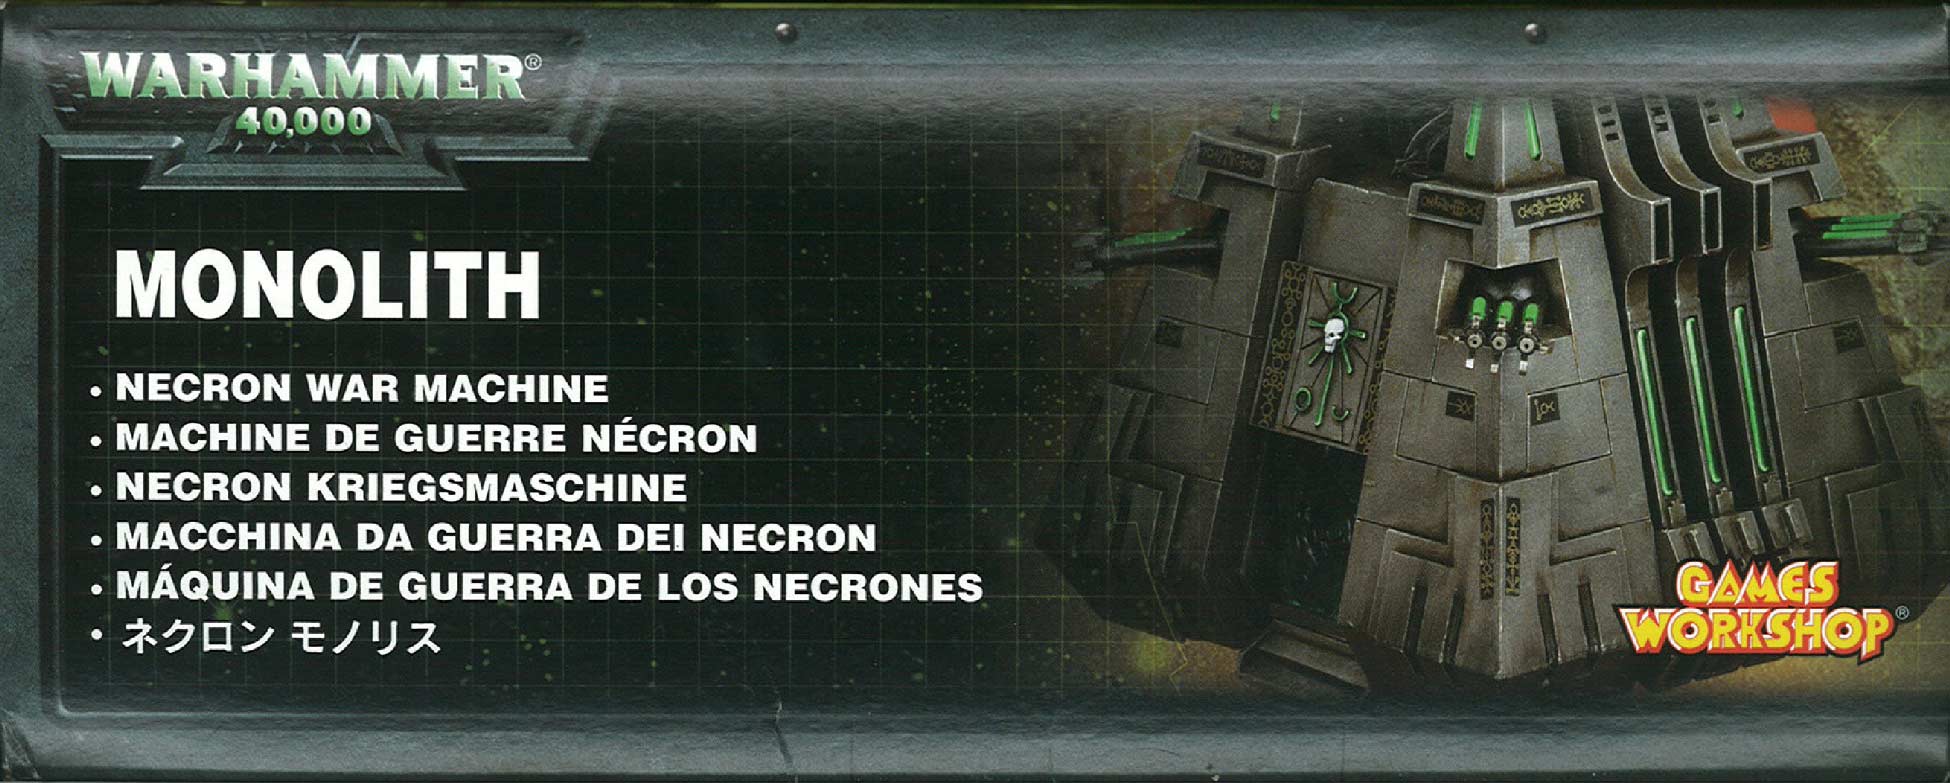 Côté gauche du packaging du Monolithe Nécron (Warhammer 40.000)